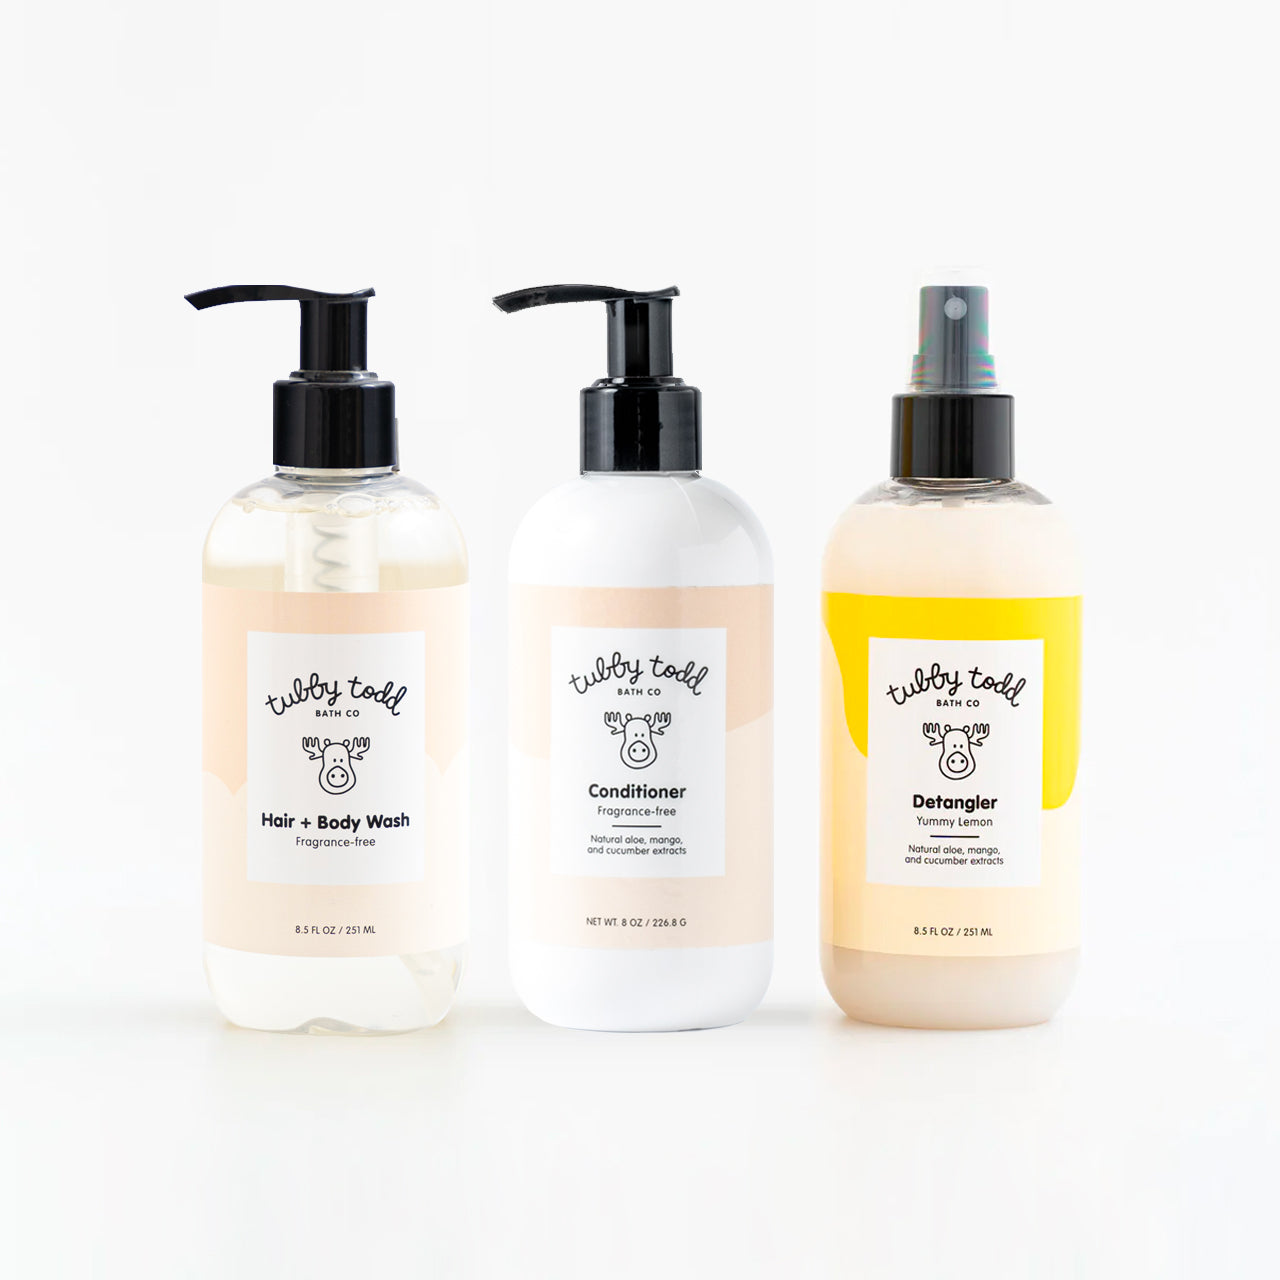 Fragrance-free Hair + Body Wash, Fragrance-free Hair Conditioner and Lemon Detangler